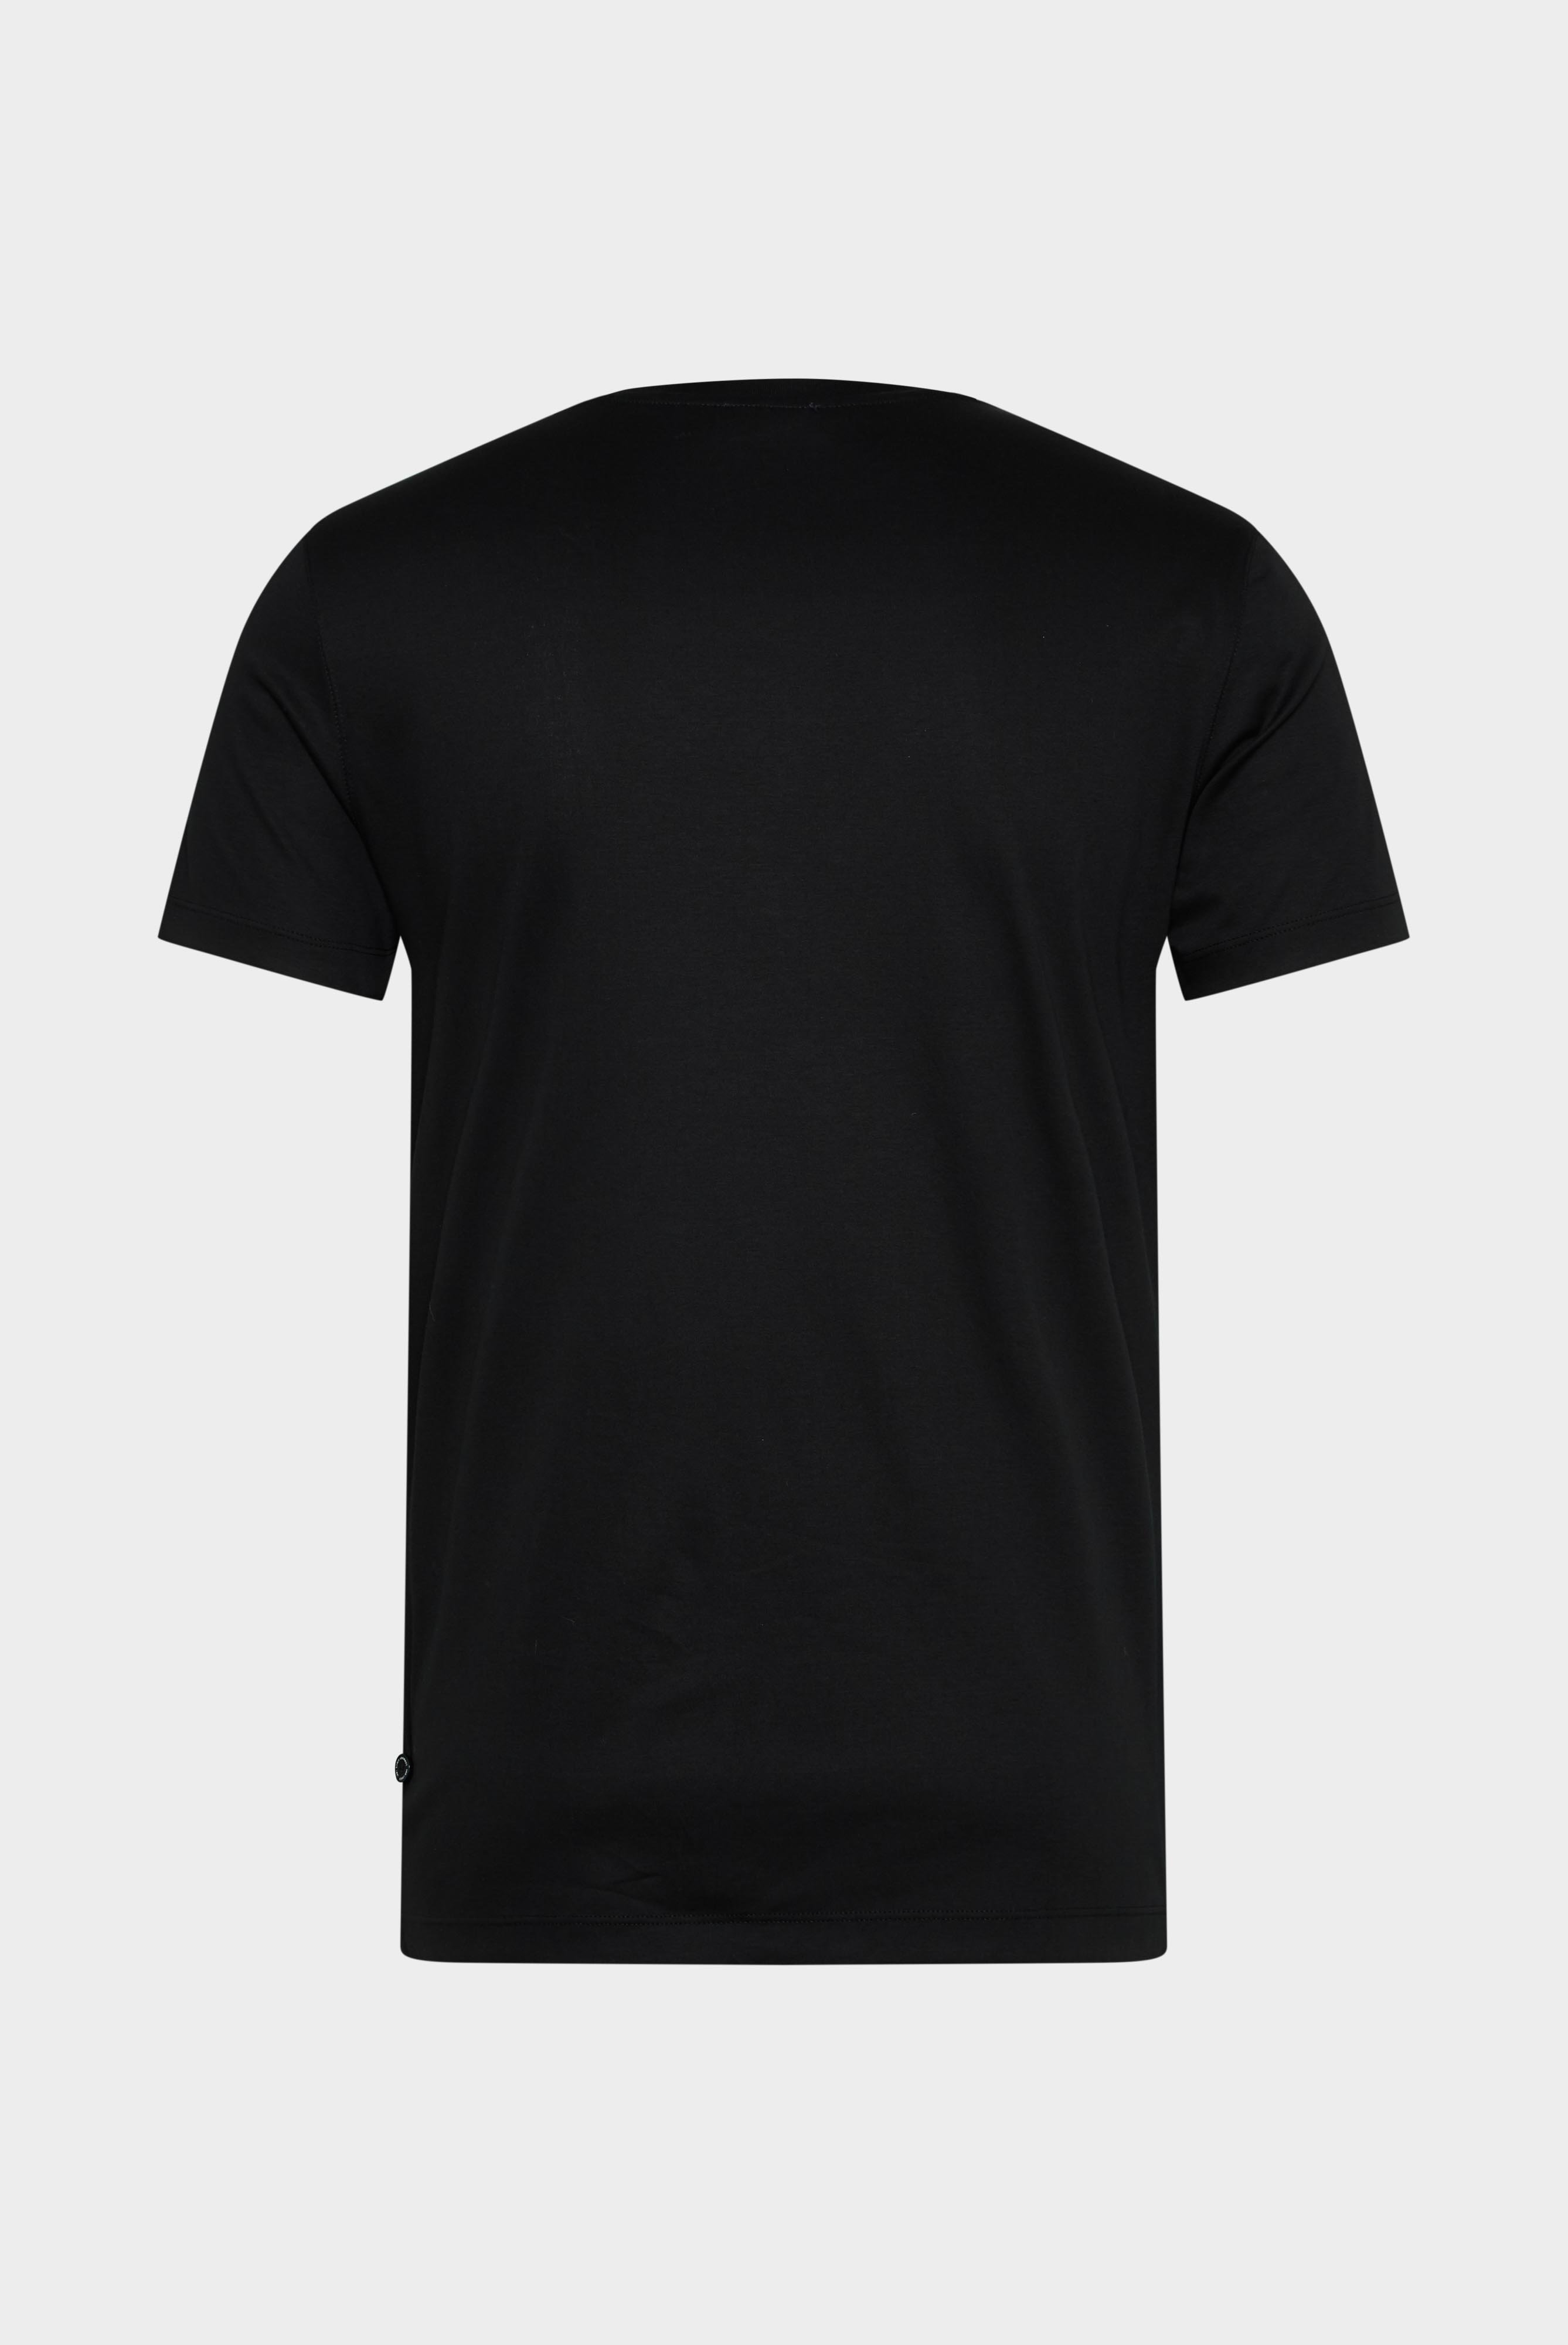 T-Shirts+V-Ausschnitt Jersey T-Shirt Slim Fit+20.1715.UX.180031.099.M